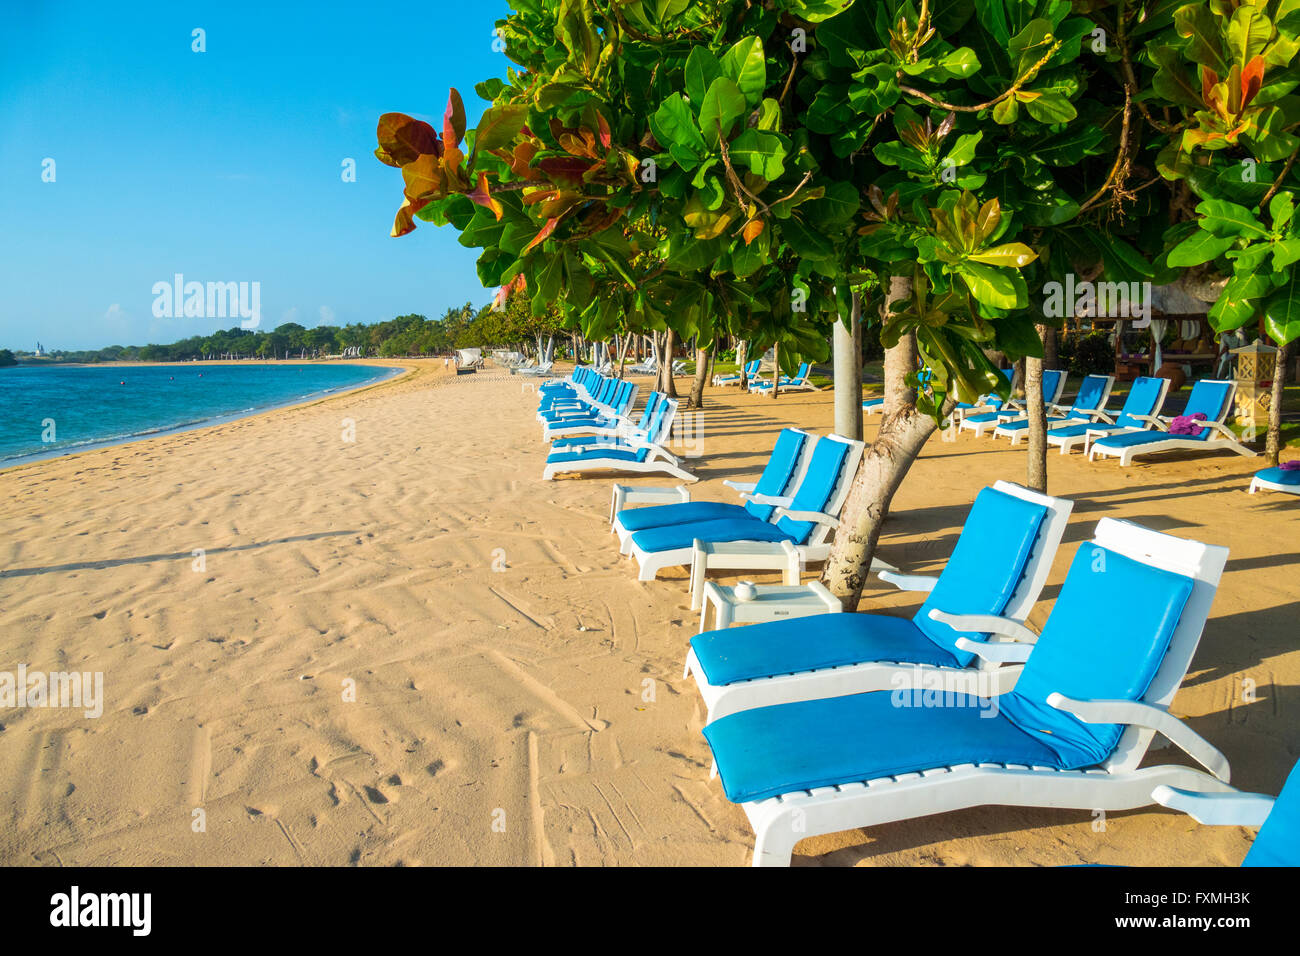 Strand Stühle Line-up am Strand von Nusa Dua, Bali, Indonesien Stockfoto